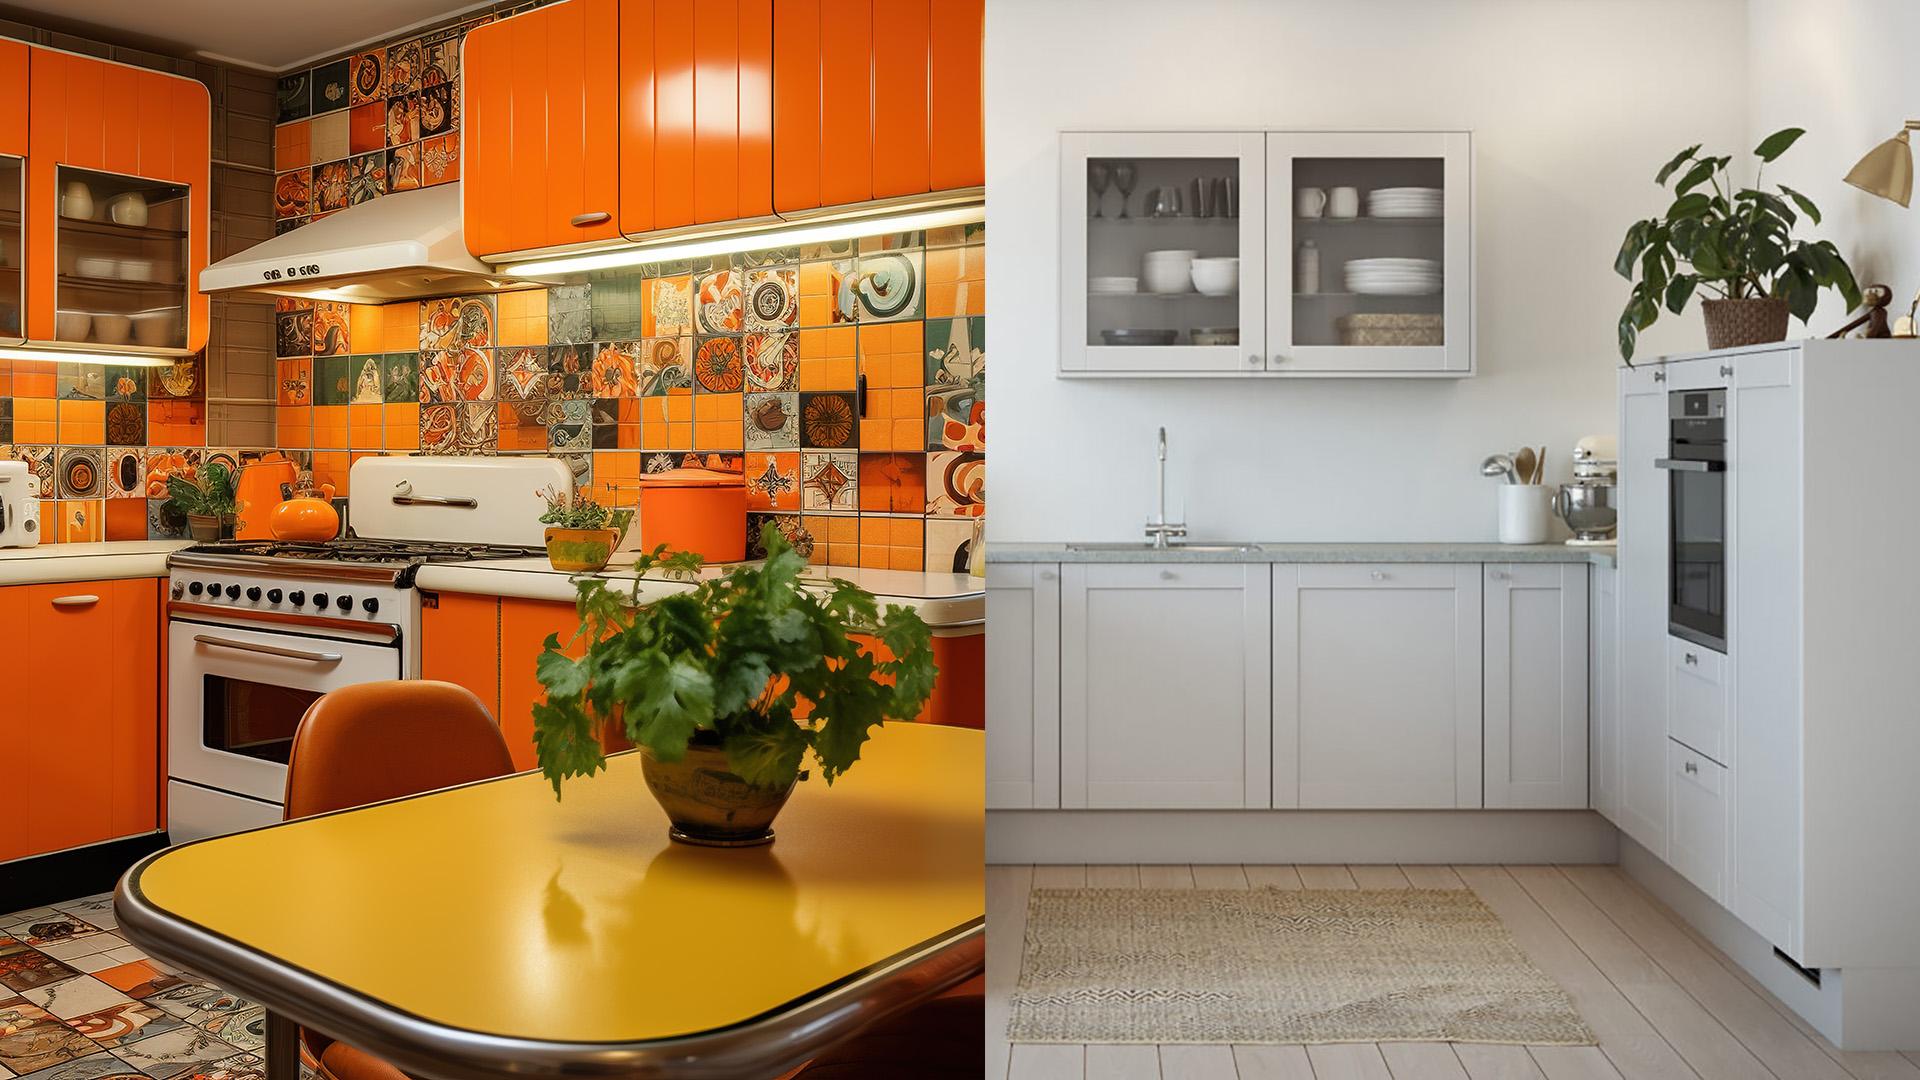 <p data-block-key="5o6fj">Värillä on väliä! Voimakkaat, lämpimät sävyt tekevät huoneesta pienemmän ja intiimimmän oloisen. Valkoinen tai vaalea keittiö luo tilaa ja valoa ympärilleen. Tiesitkö, että oranssia käytetään ravintoloissa lisäämässä ruokahalua.</p>